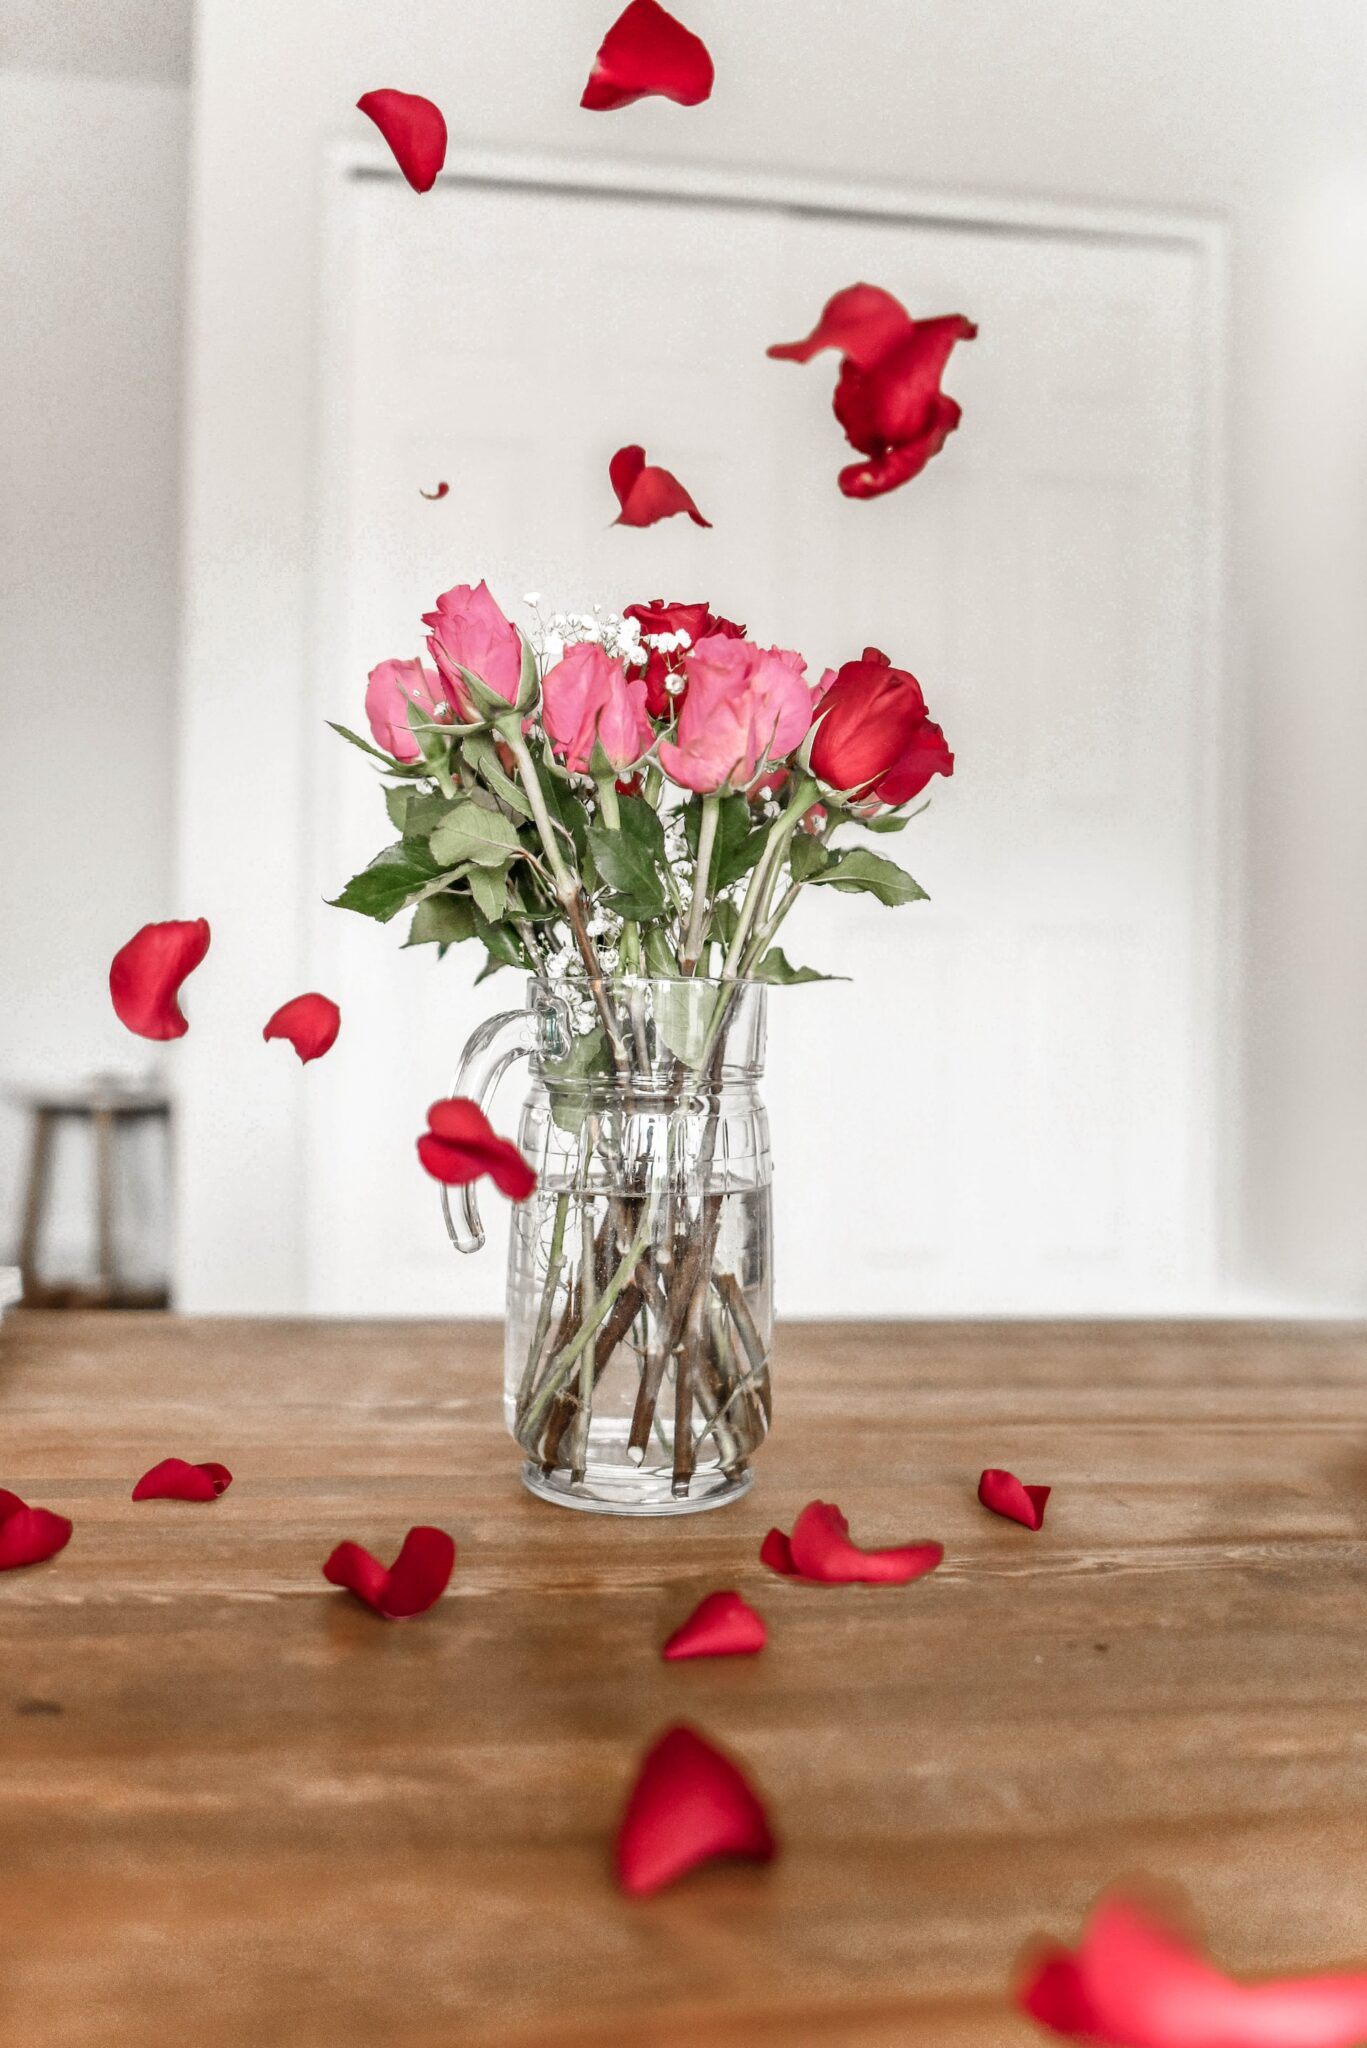 roses in vase petals falling